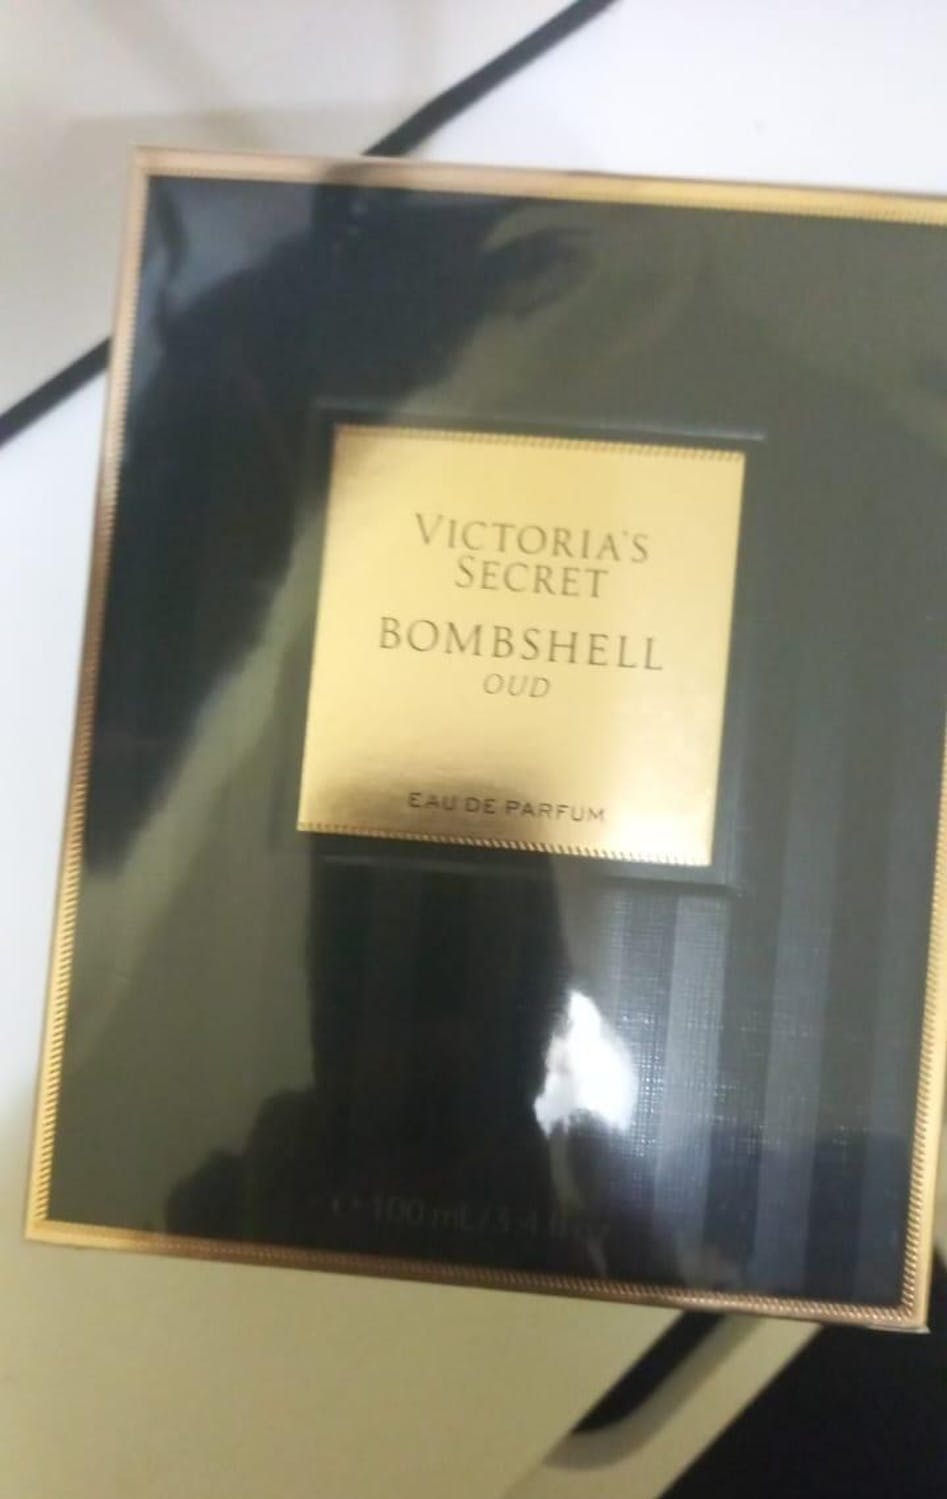 Victoria's Secret Bombshell Oud Eau De Parfum for Women – Perfume